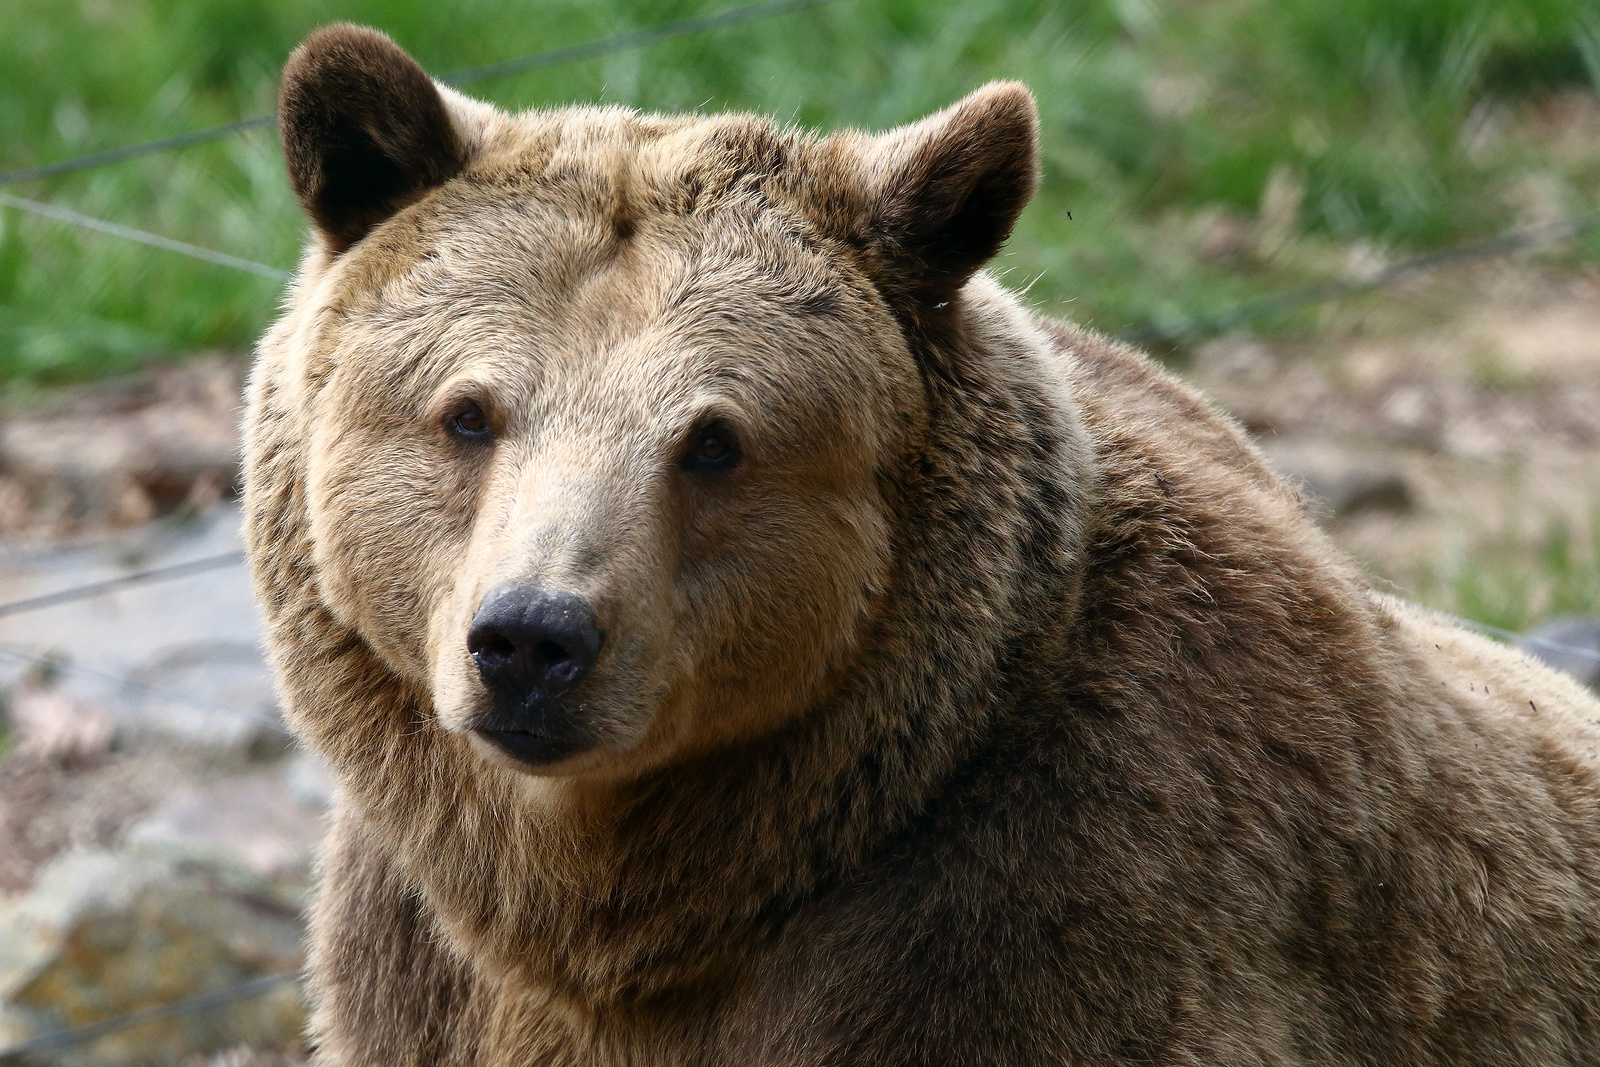 Další zpráva o výskytu medvěda nedaleko Prahy: tentokrát z okolí Všetat -  Mělnický deník